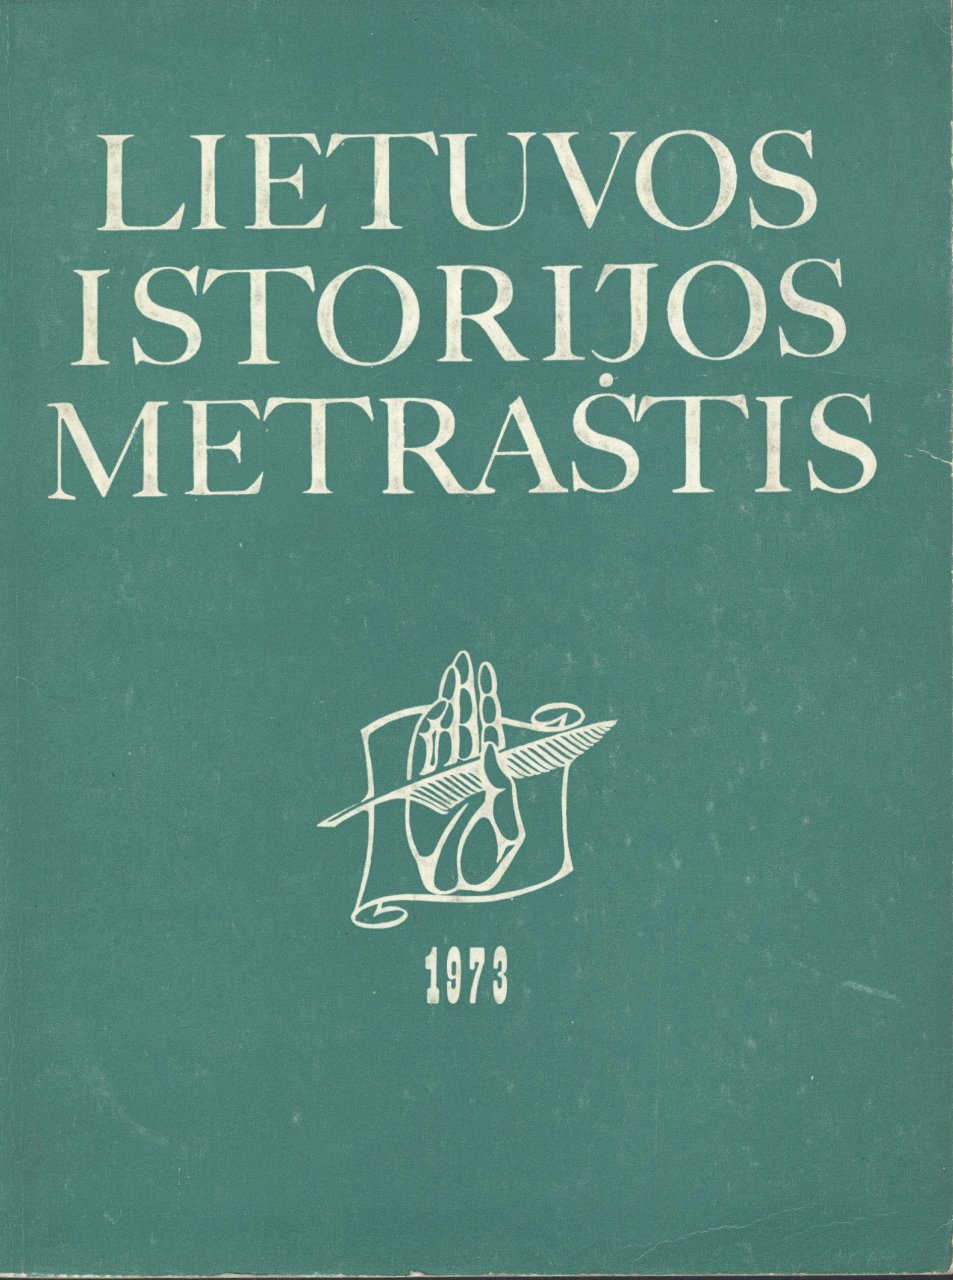 Lietuvos istorijos metraštis 1973 metai